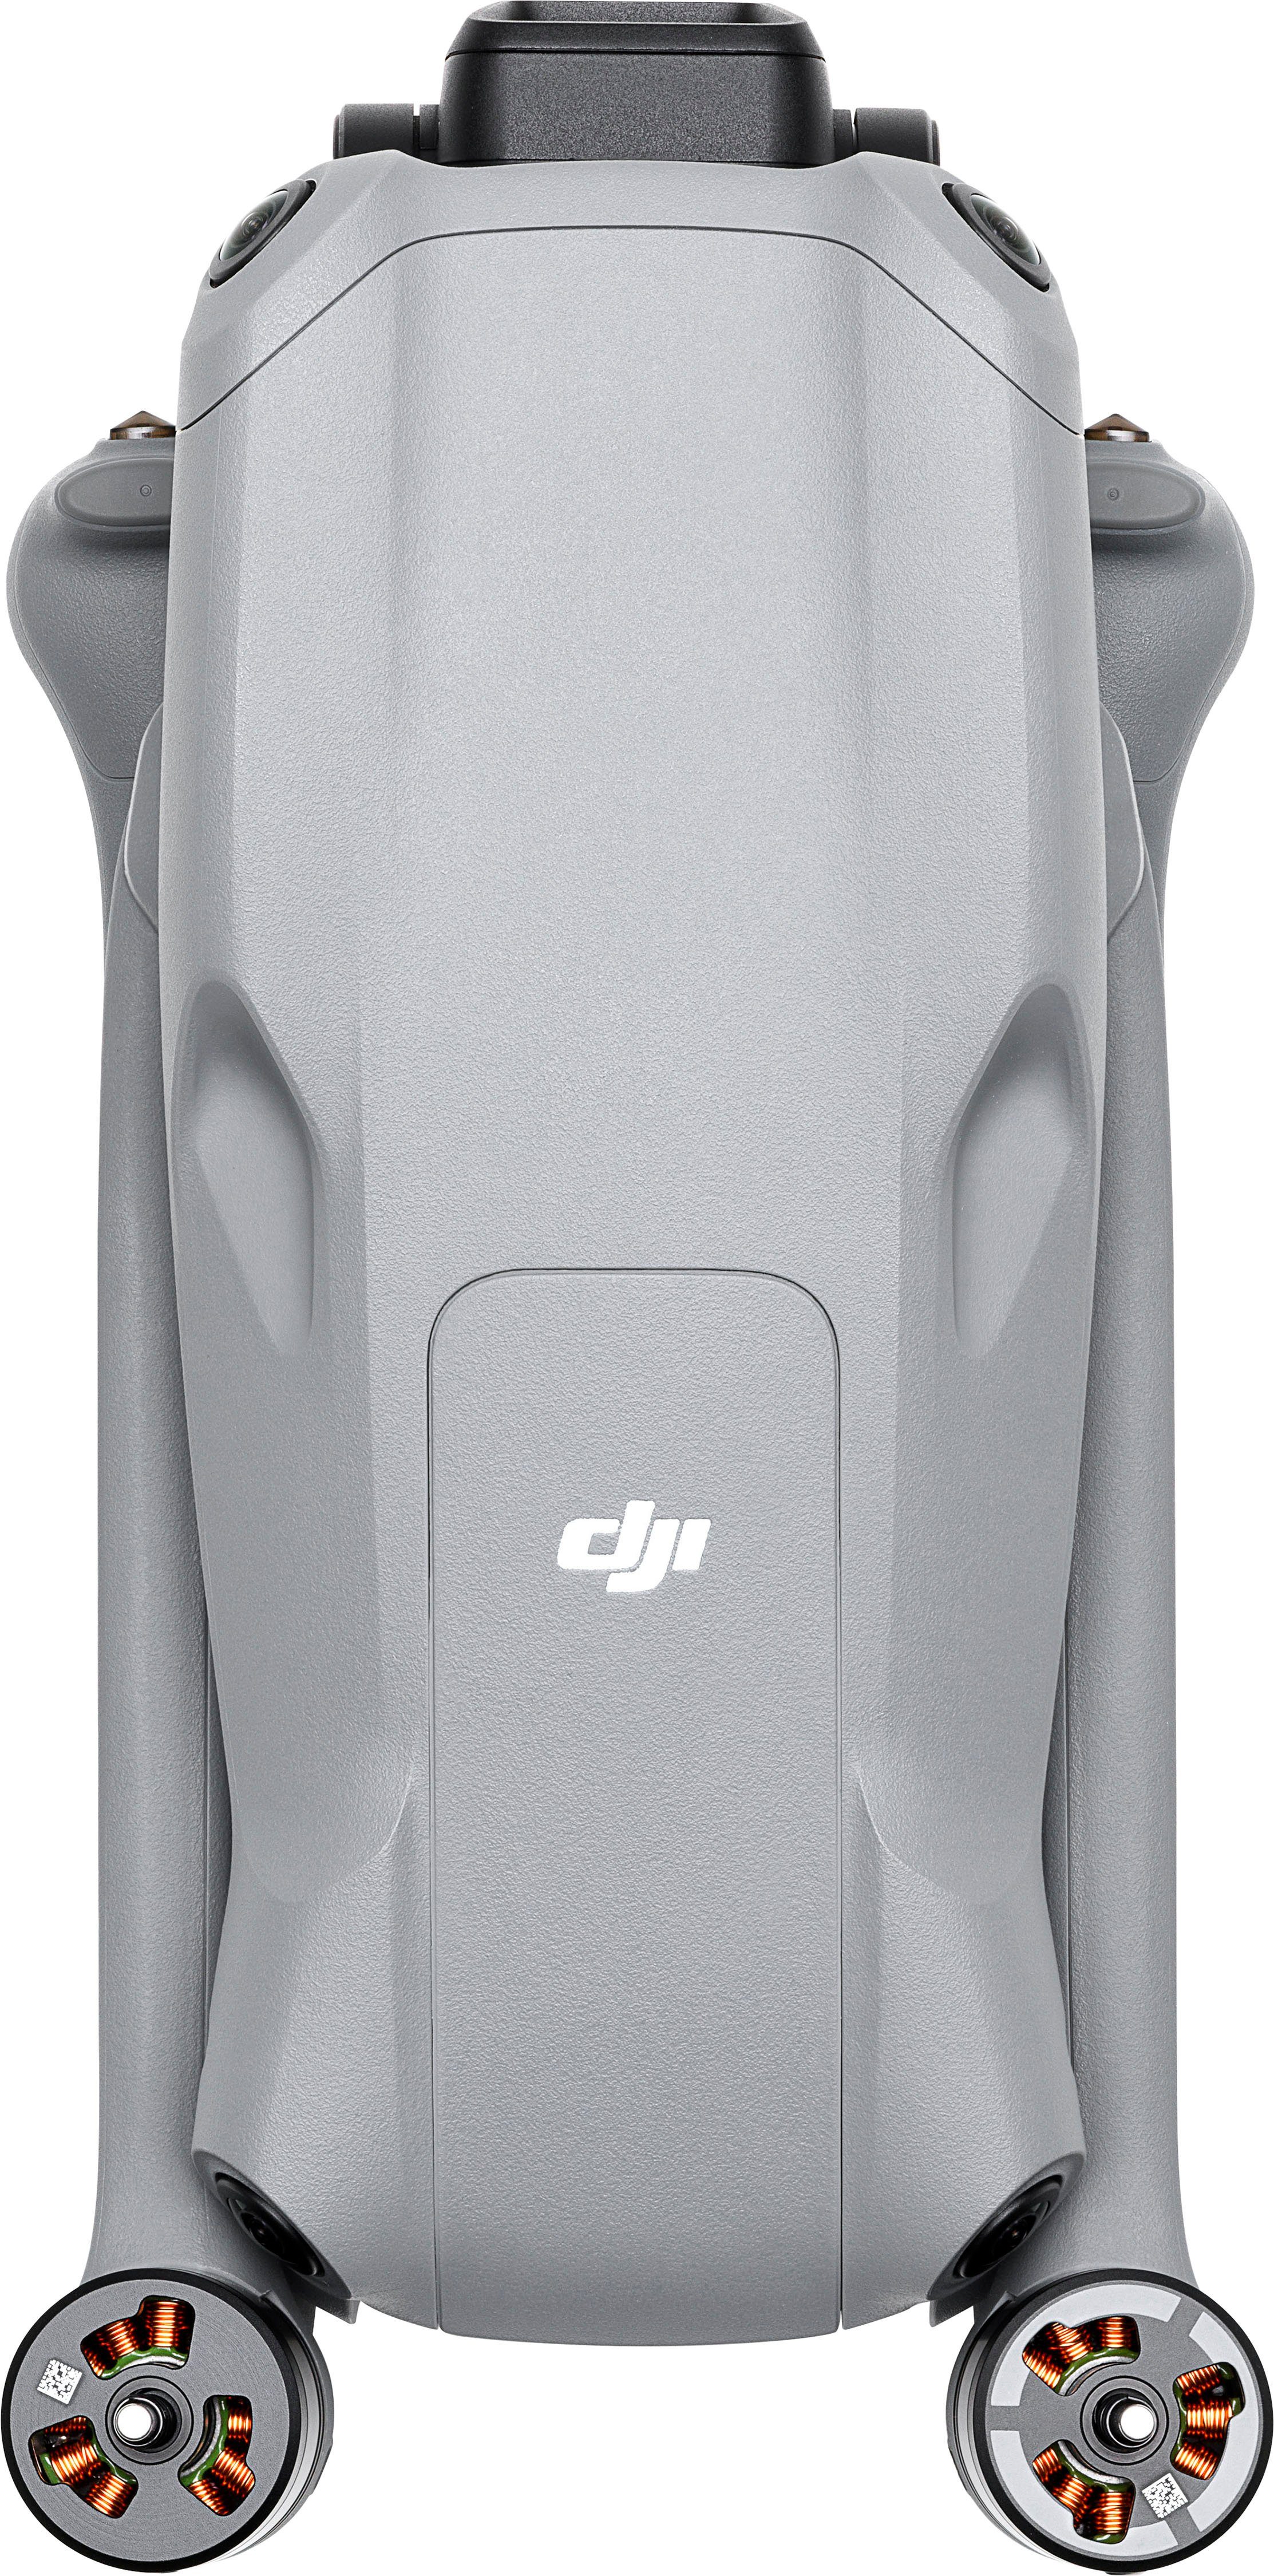 More Fly Ultra Air (4K RC 2) (DJI 3 DJI Drohne Combo HD)